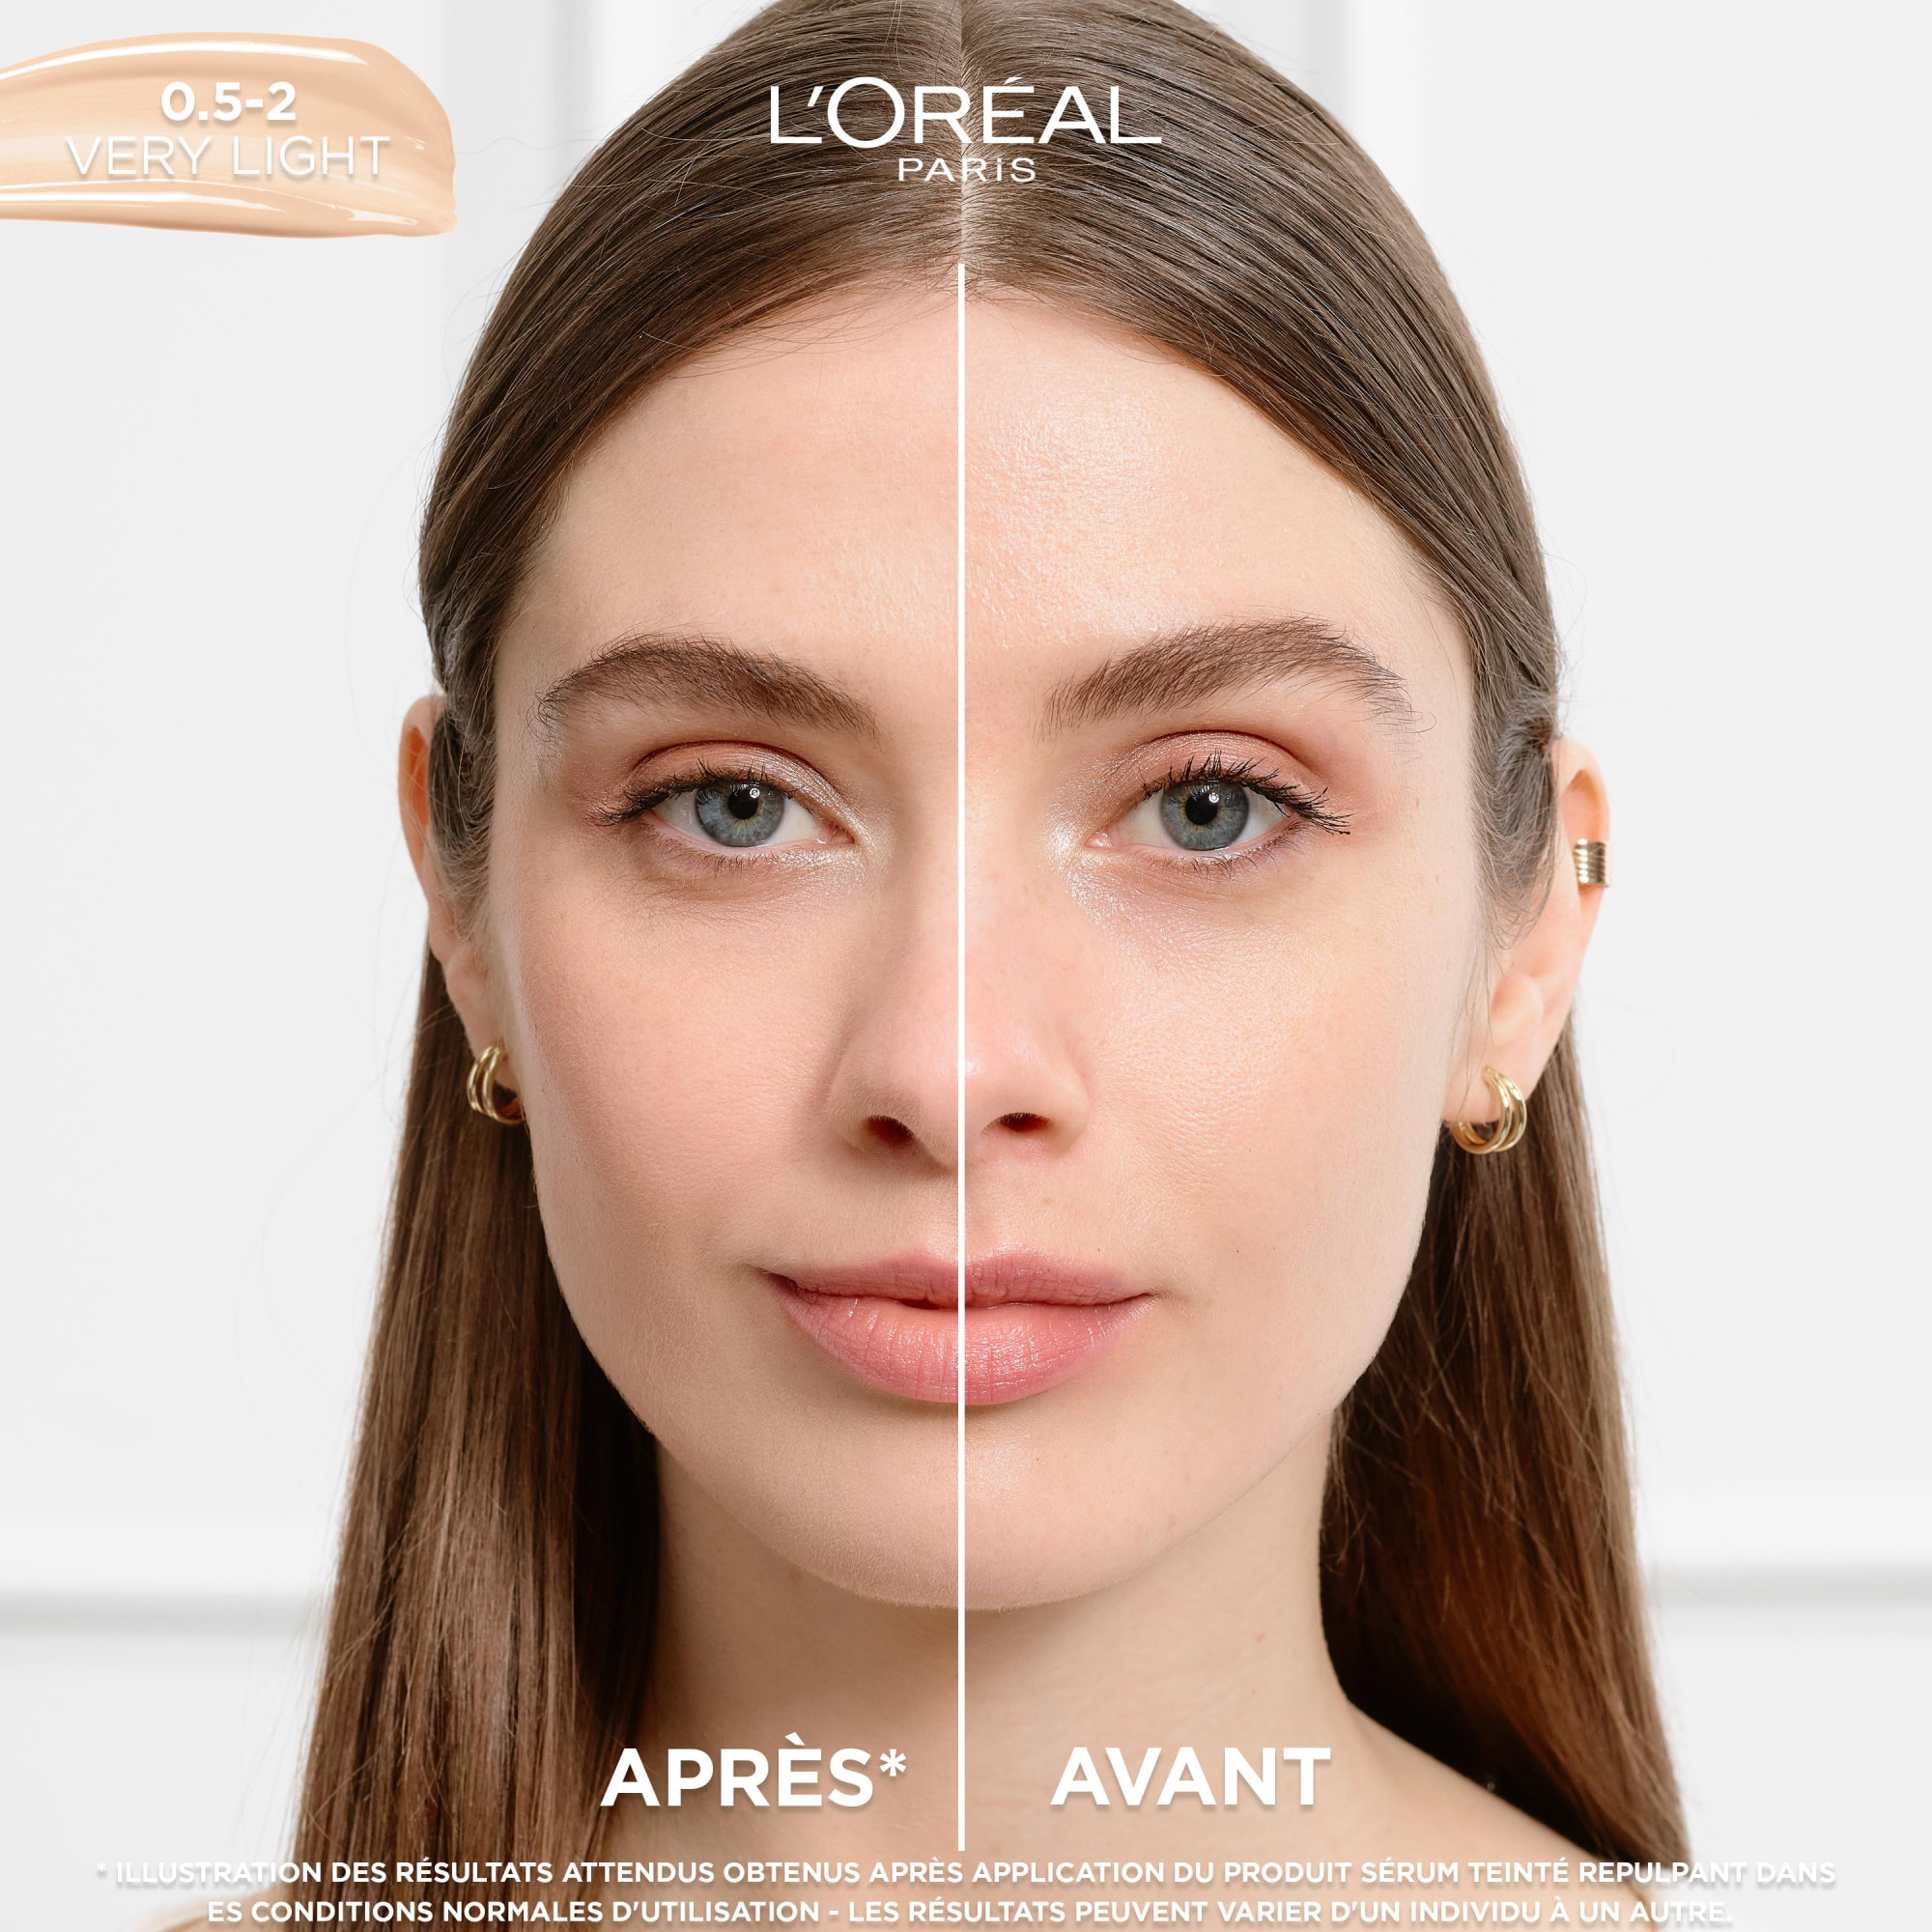 L'Oréal Paris Accord Parfait Sérum teinté repulpant 0,5-2 Very Light